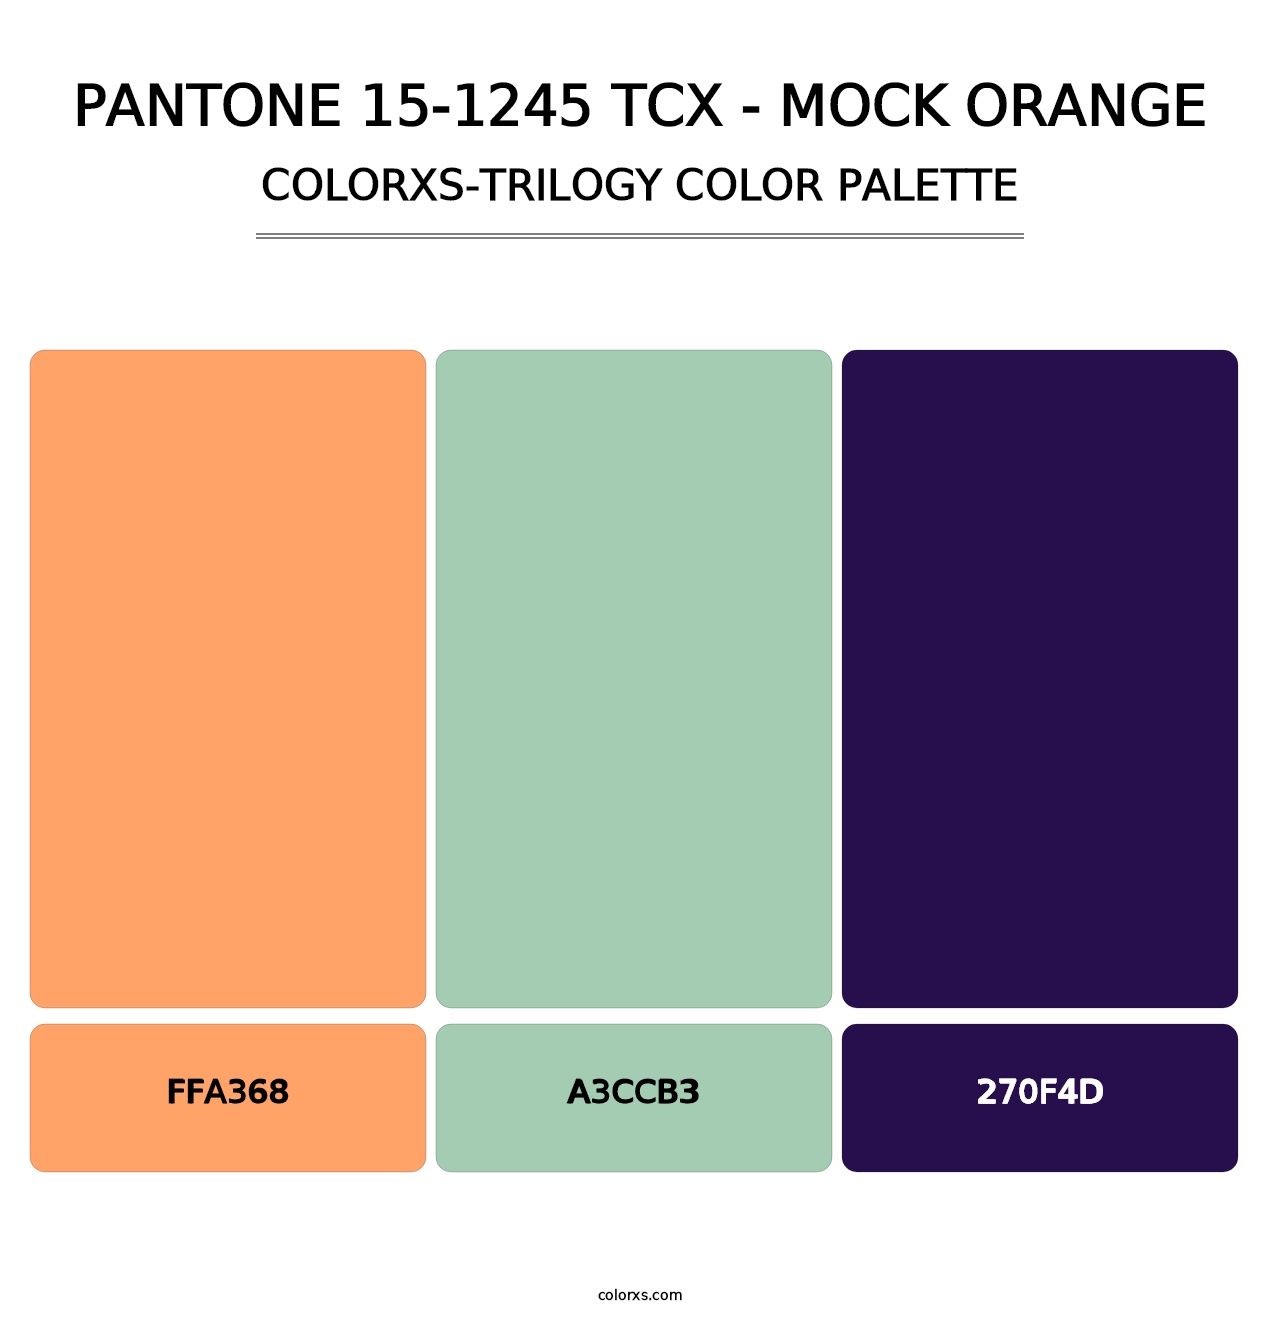 PANTONE 15-1245 TCX - Mock Orange - Colorxs Trilogy Palette